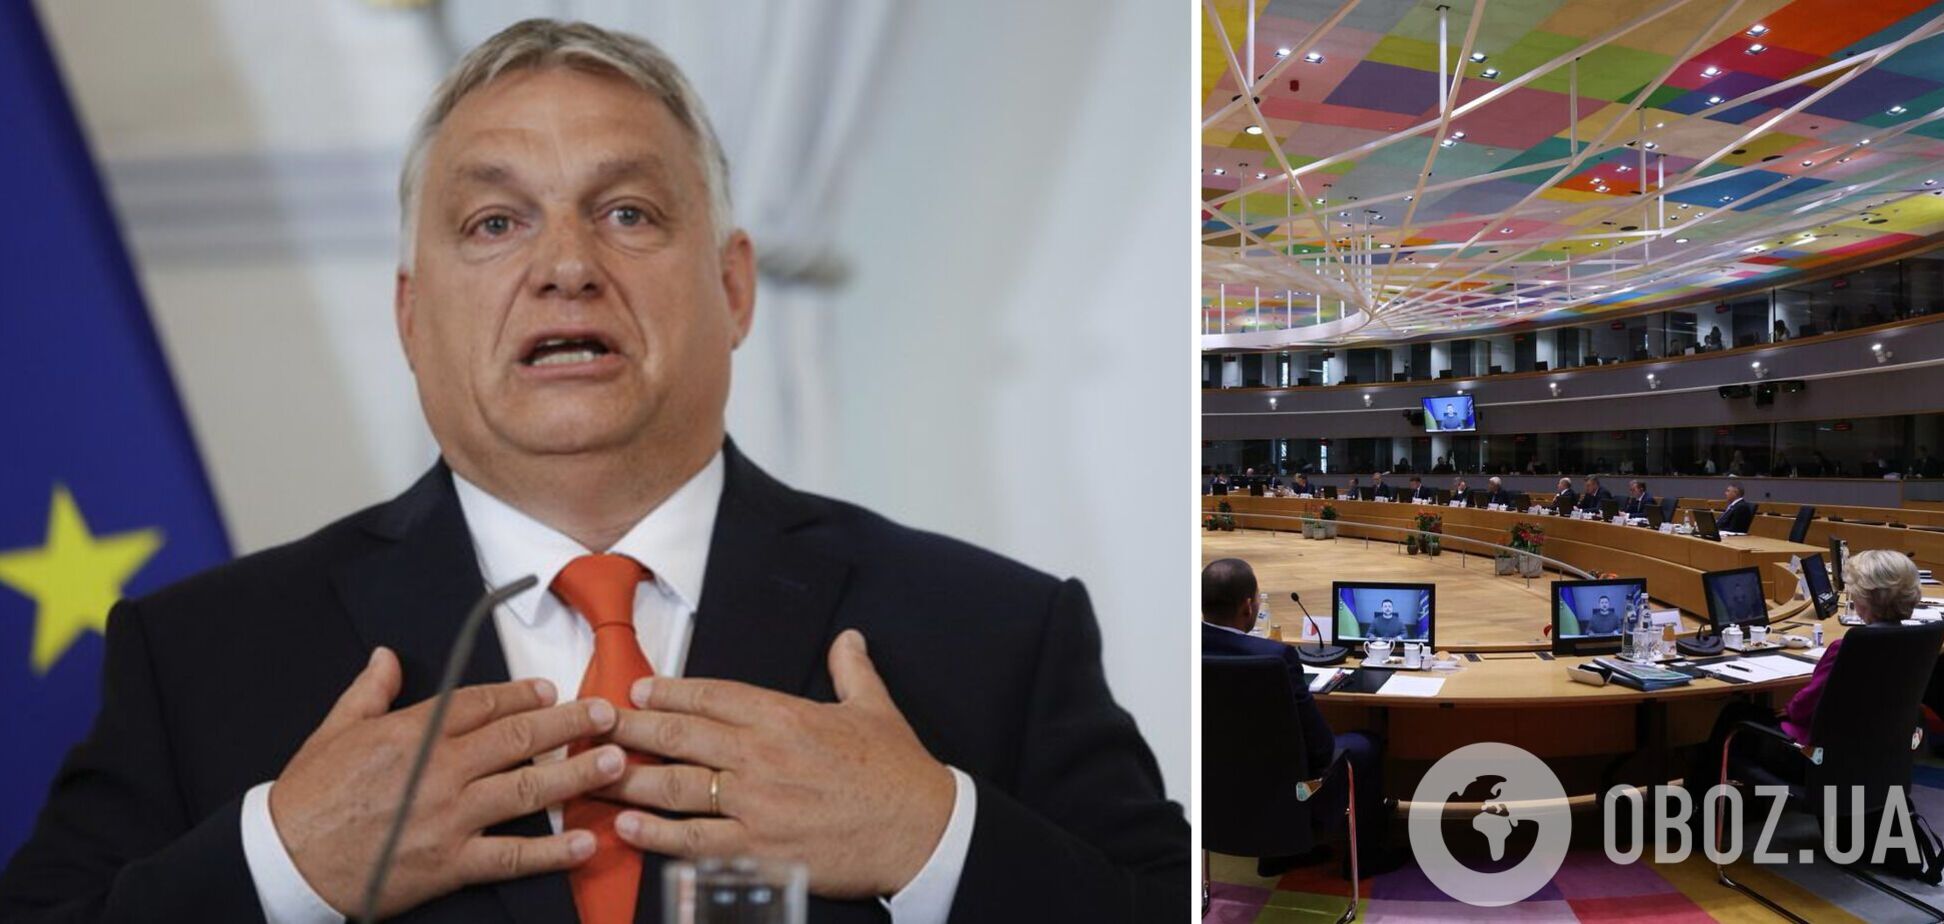 Орбан у своєму стилі видав умови рішення про 50 млрд євро для України за 'перемогу Угорщини'